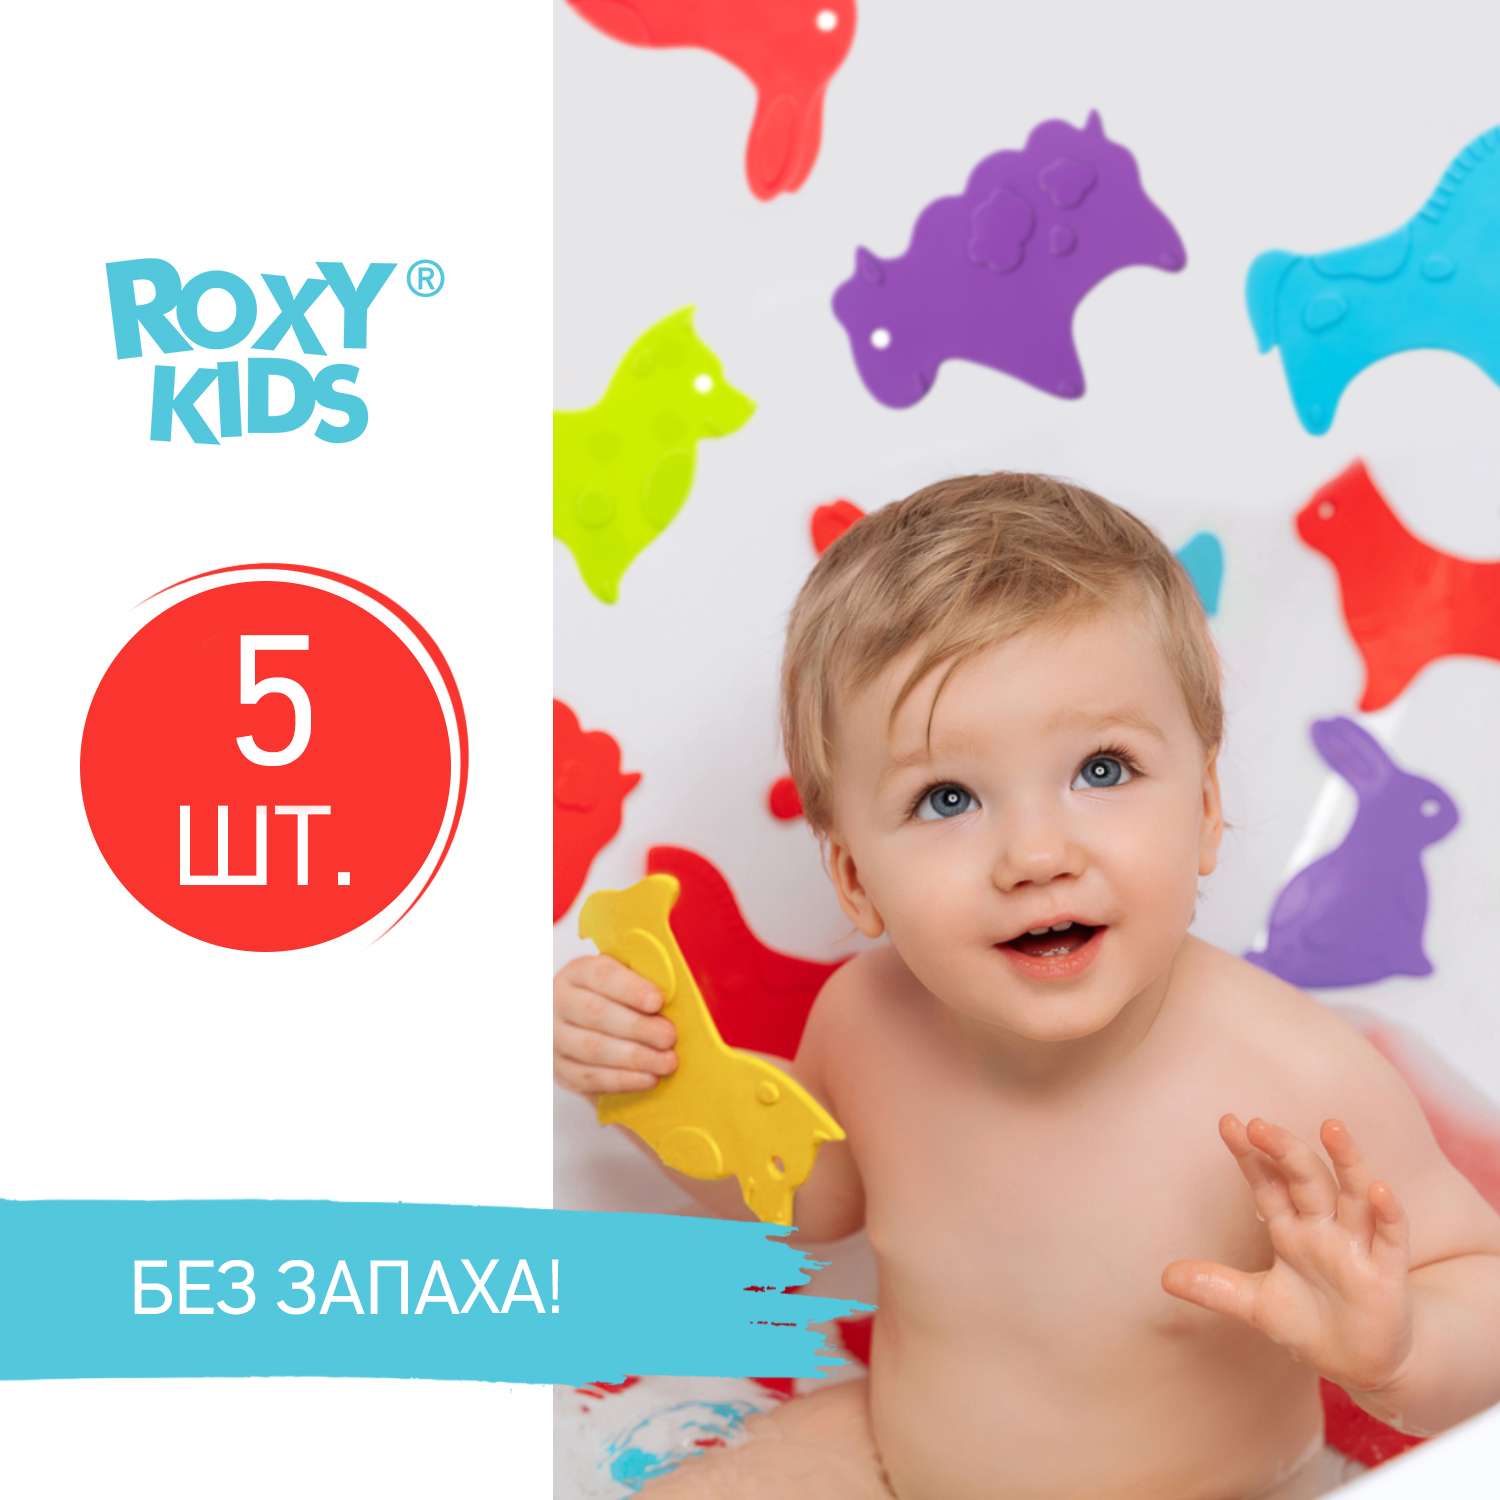 Мини-коврики детские ROXY-KIDS для ванной противоскользящие Animals 5 шт цвета в ассортименте - фото 2